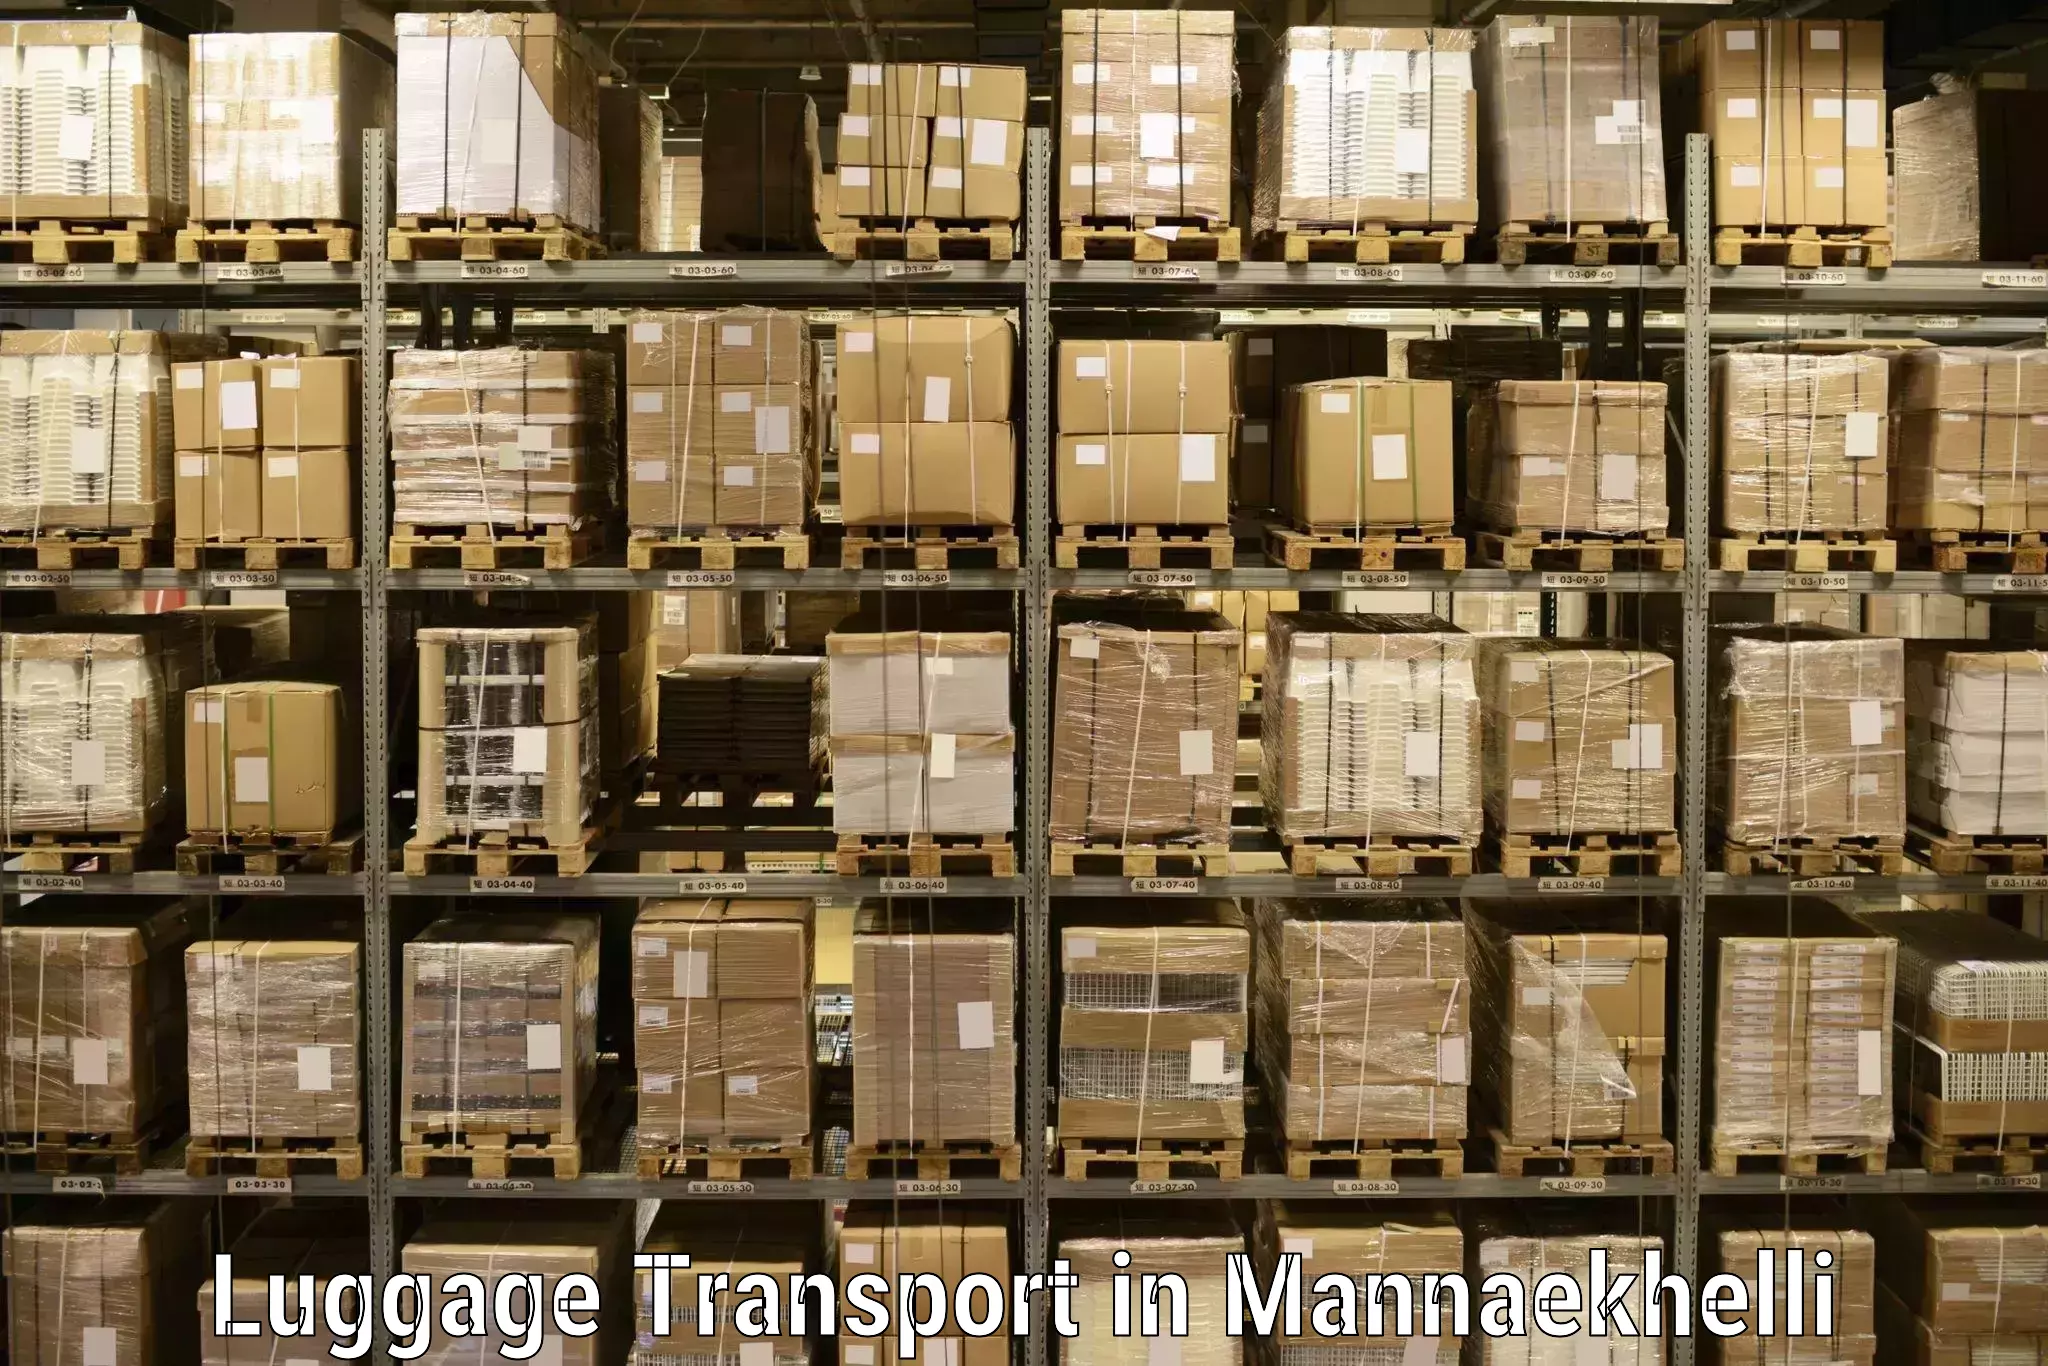 Baggage transport management in Mannaekhelli